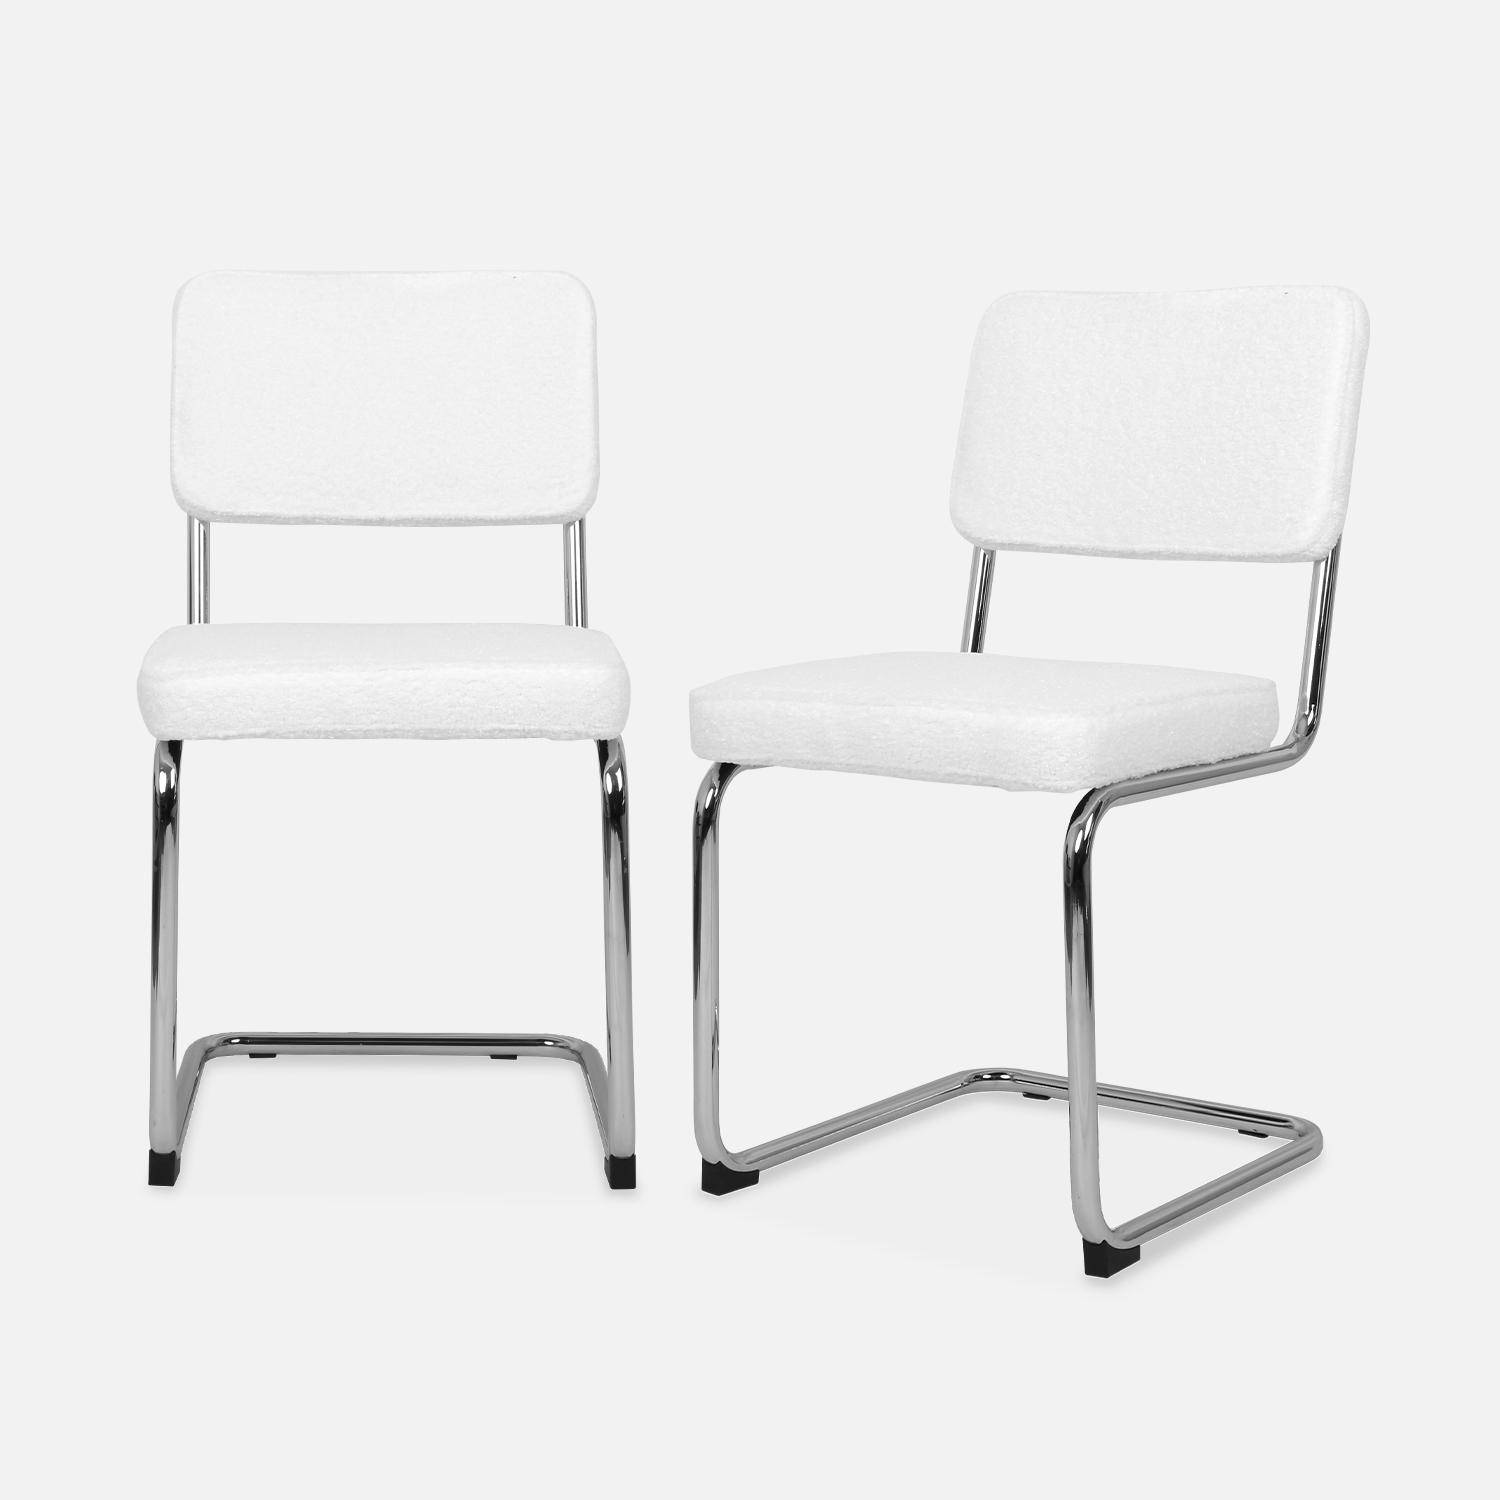 2 cadeiras cantilever - Maja - com caracóis brancos, 46 x 54,5 x 84,5cm Photo3